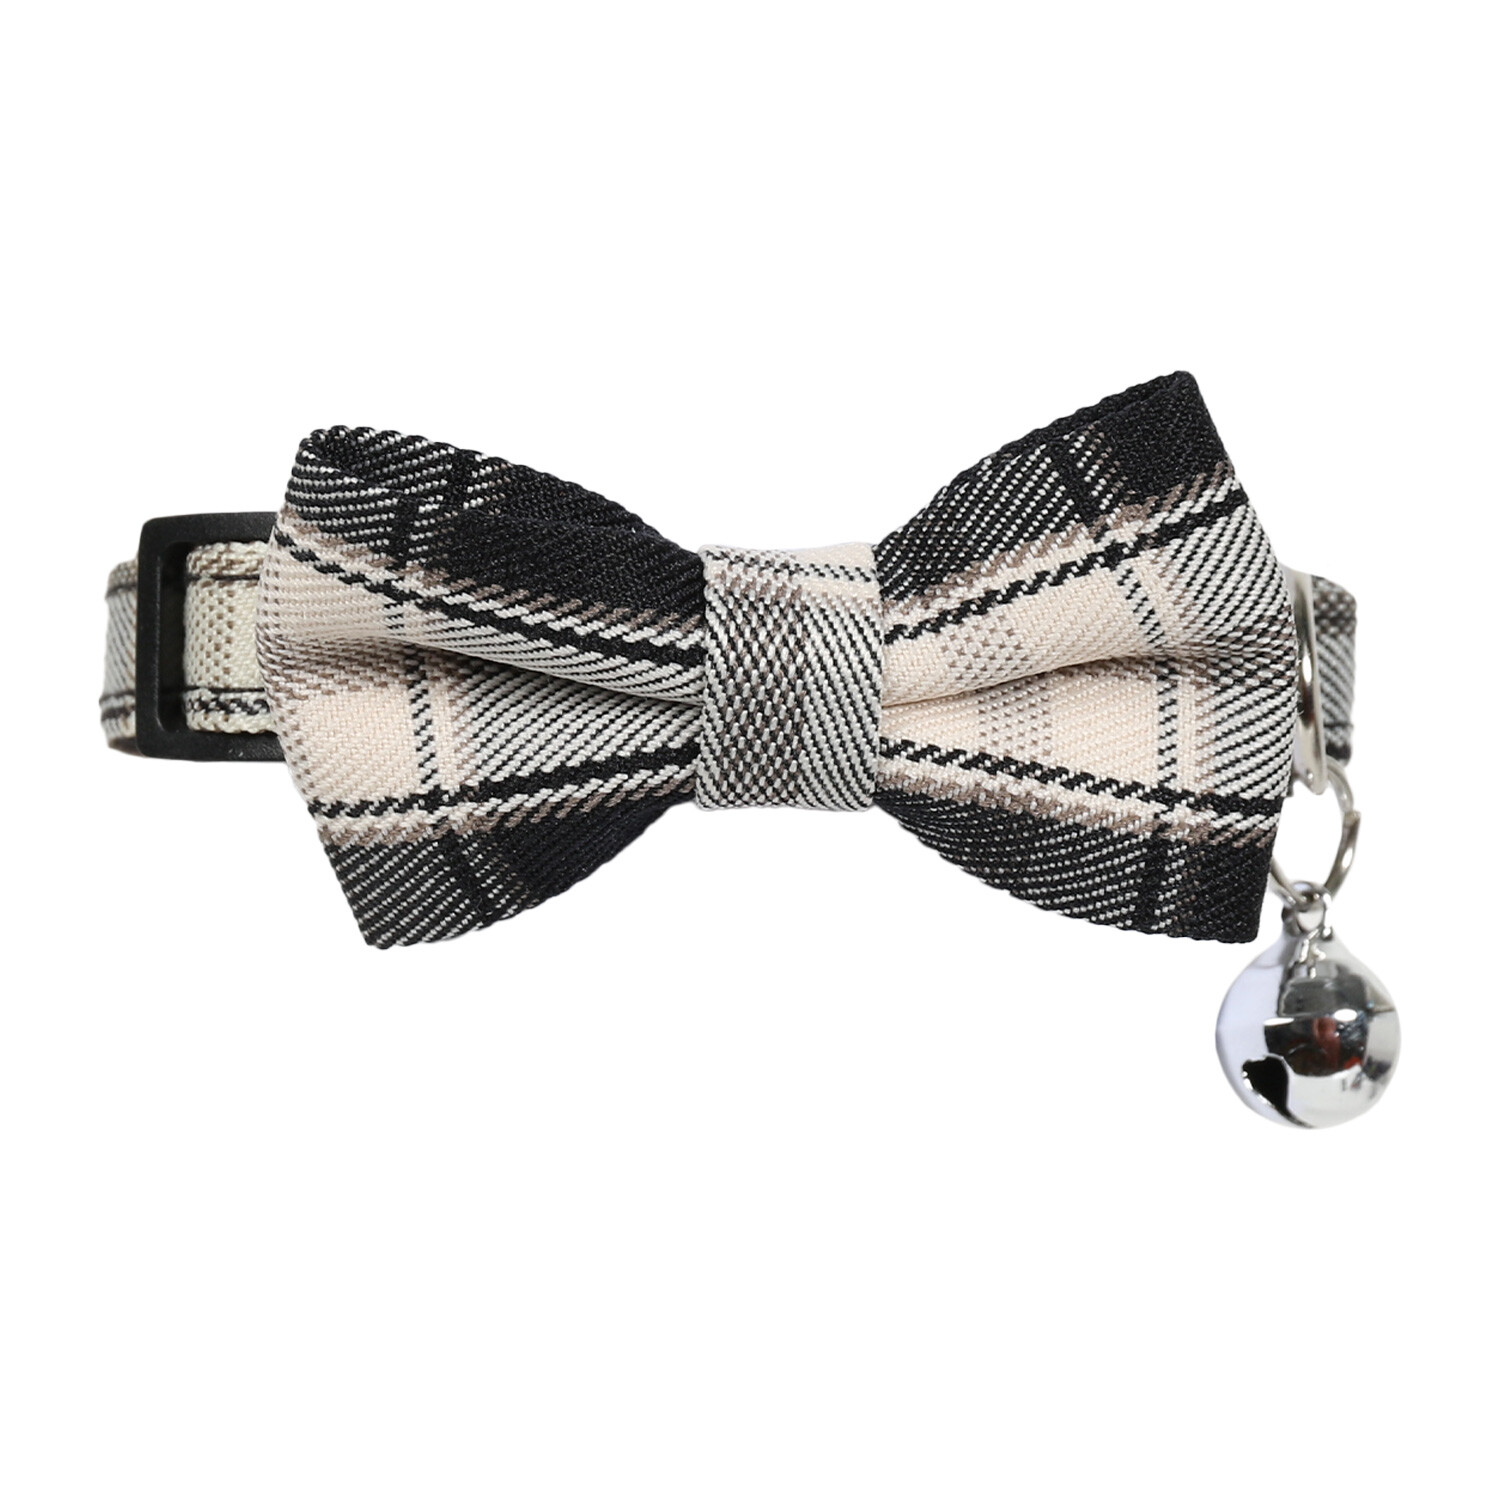 Bowtie Cat Collar - Black Plaid Image 2